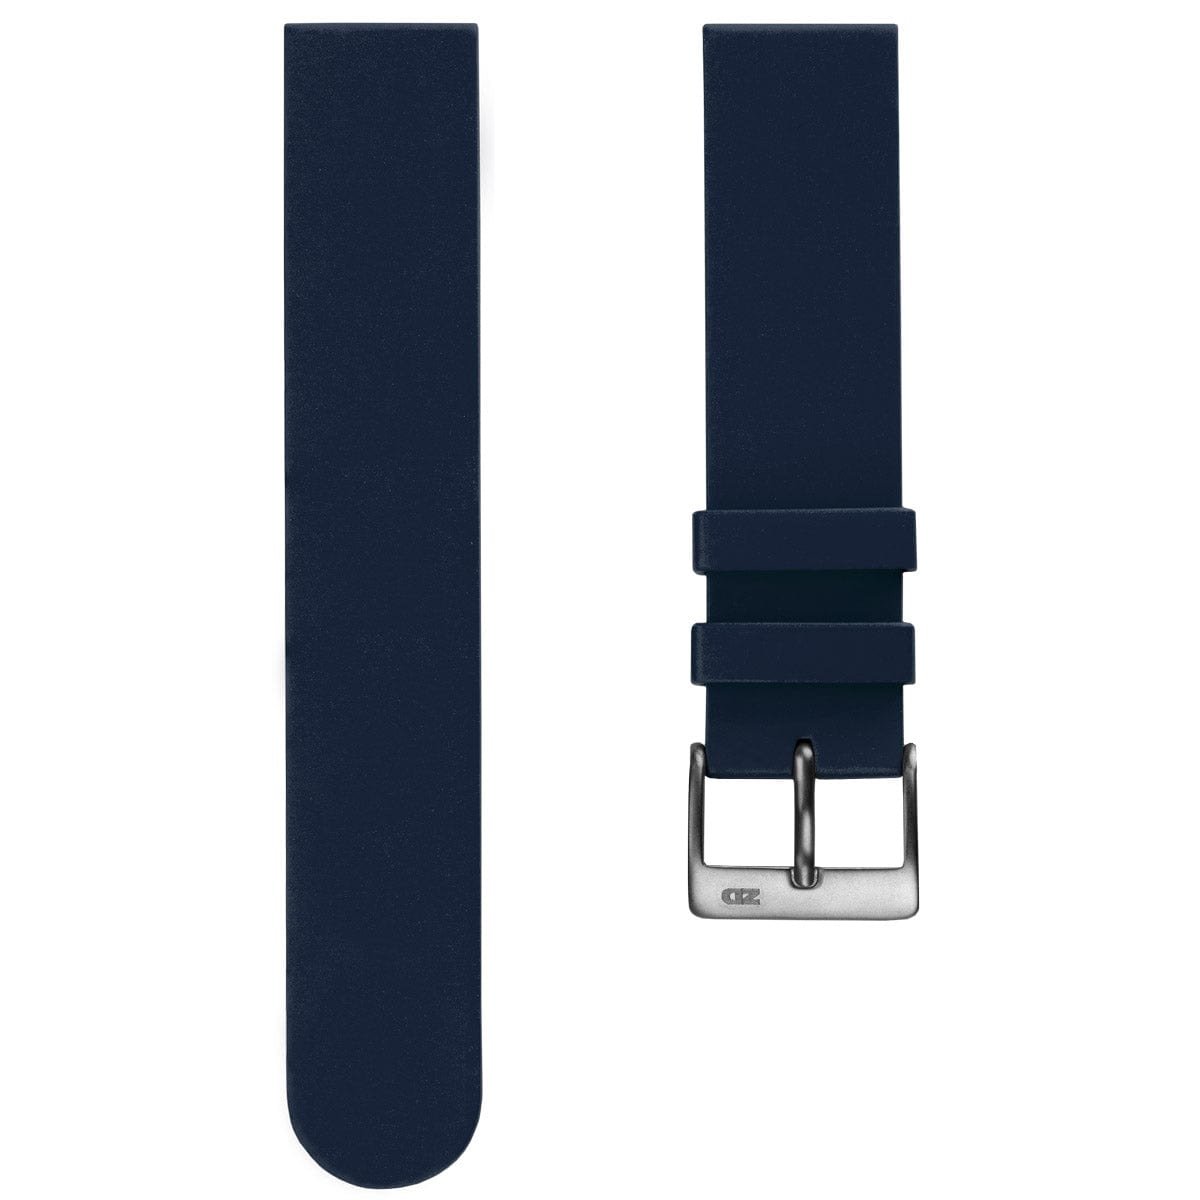 ZULUDIVER 270 Italian Rubber Watch Strap - Blue